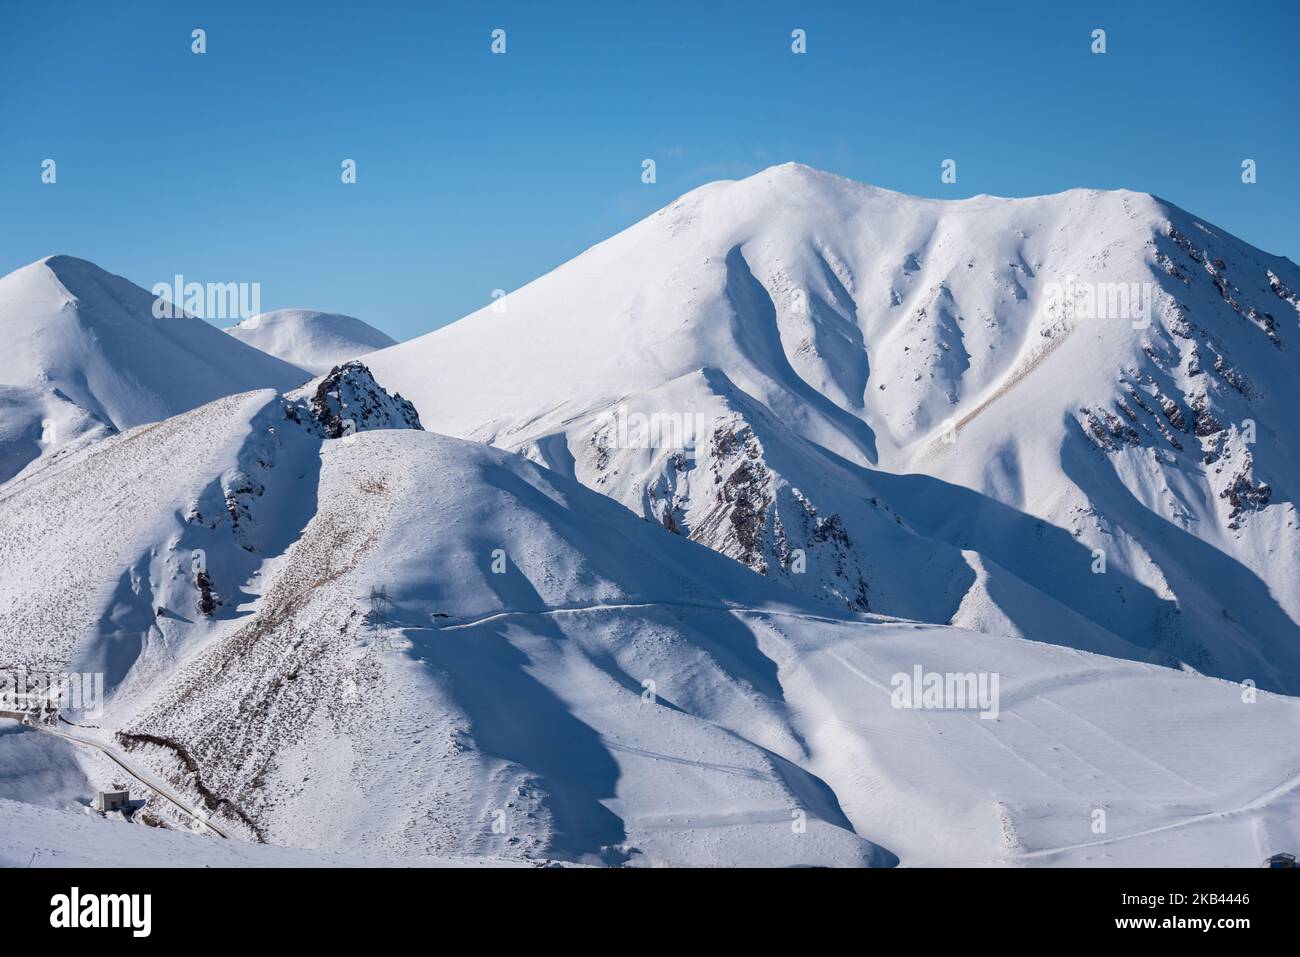 Am 9. Dezember 2018 locken die schneebedeckten Berge in der Nähe des Skigebiets Ejder 3200 Palandoken Wintersportler nach Erzurum, einem beliebten Ski- und Snowboardziel im östlichen Anatolien der Türkei. (Foto von Diego Cupolo/NurPhoto) Stockfoto